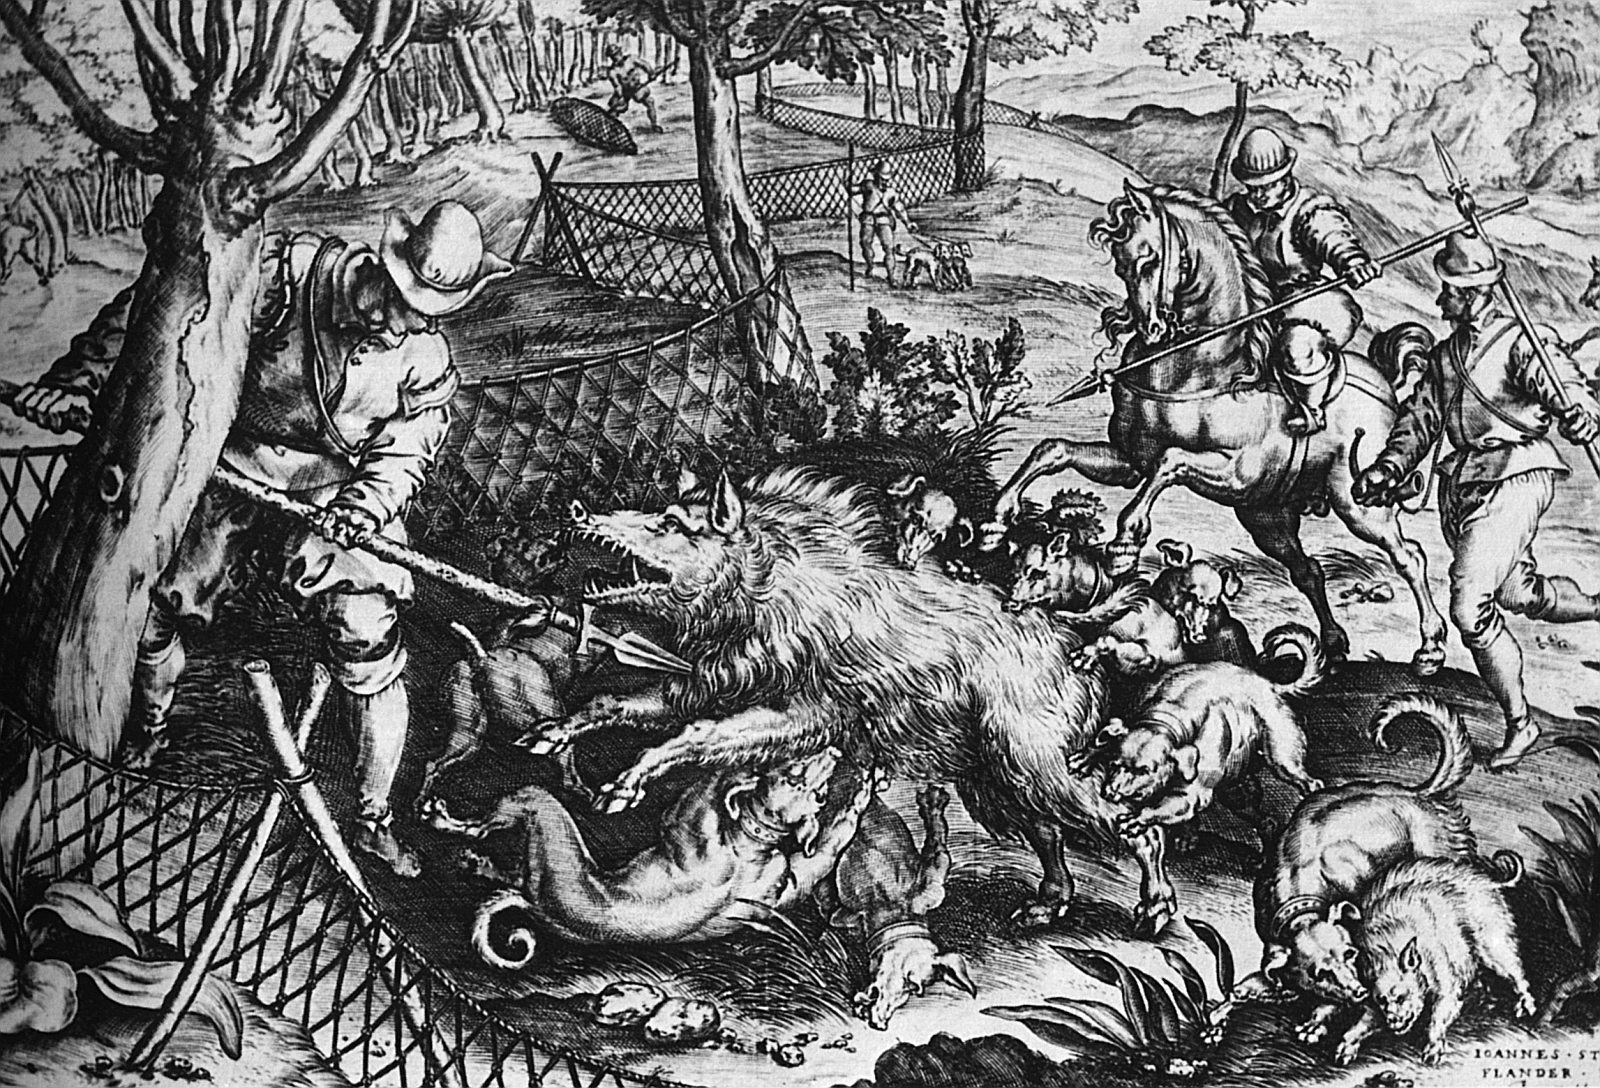 Saujagd im 16. Jahrhundert. Ein niederländischer Stich, der eine lebendige Jagdszene aus Reitern, Knechten, Jagdhunden und einem Wildschwein zeigt.